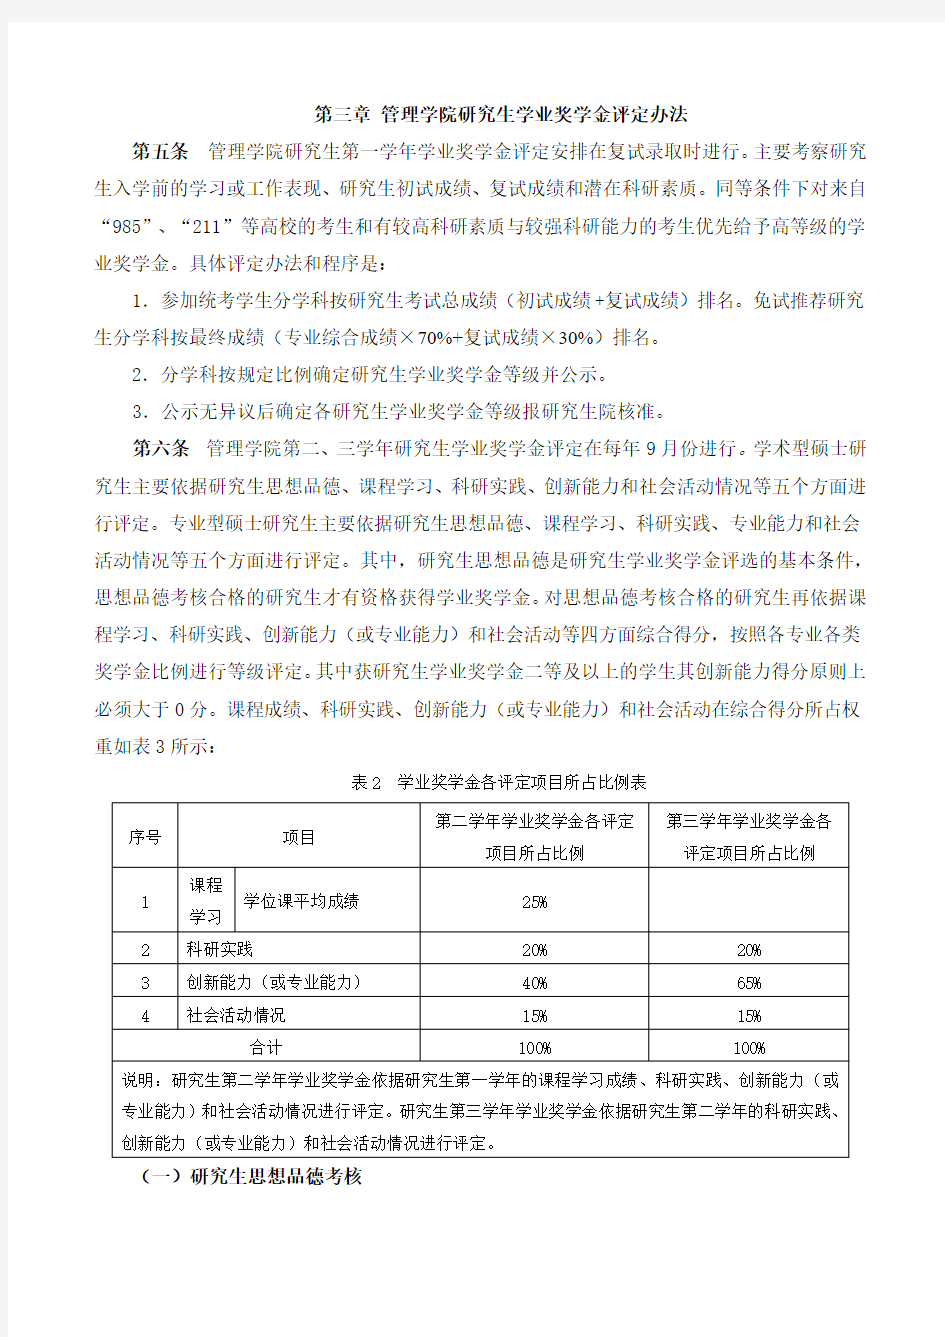 中国矿业大学管理学院研究生学业奖学金评定细则(2018年修